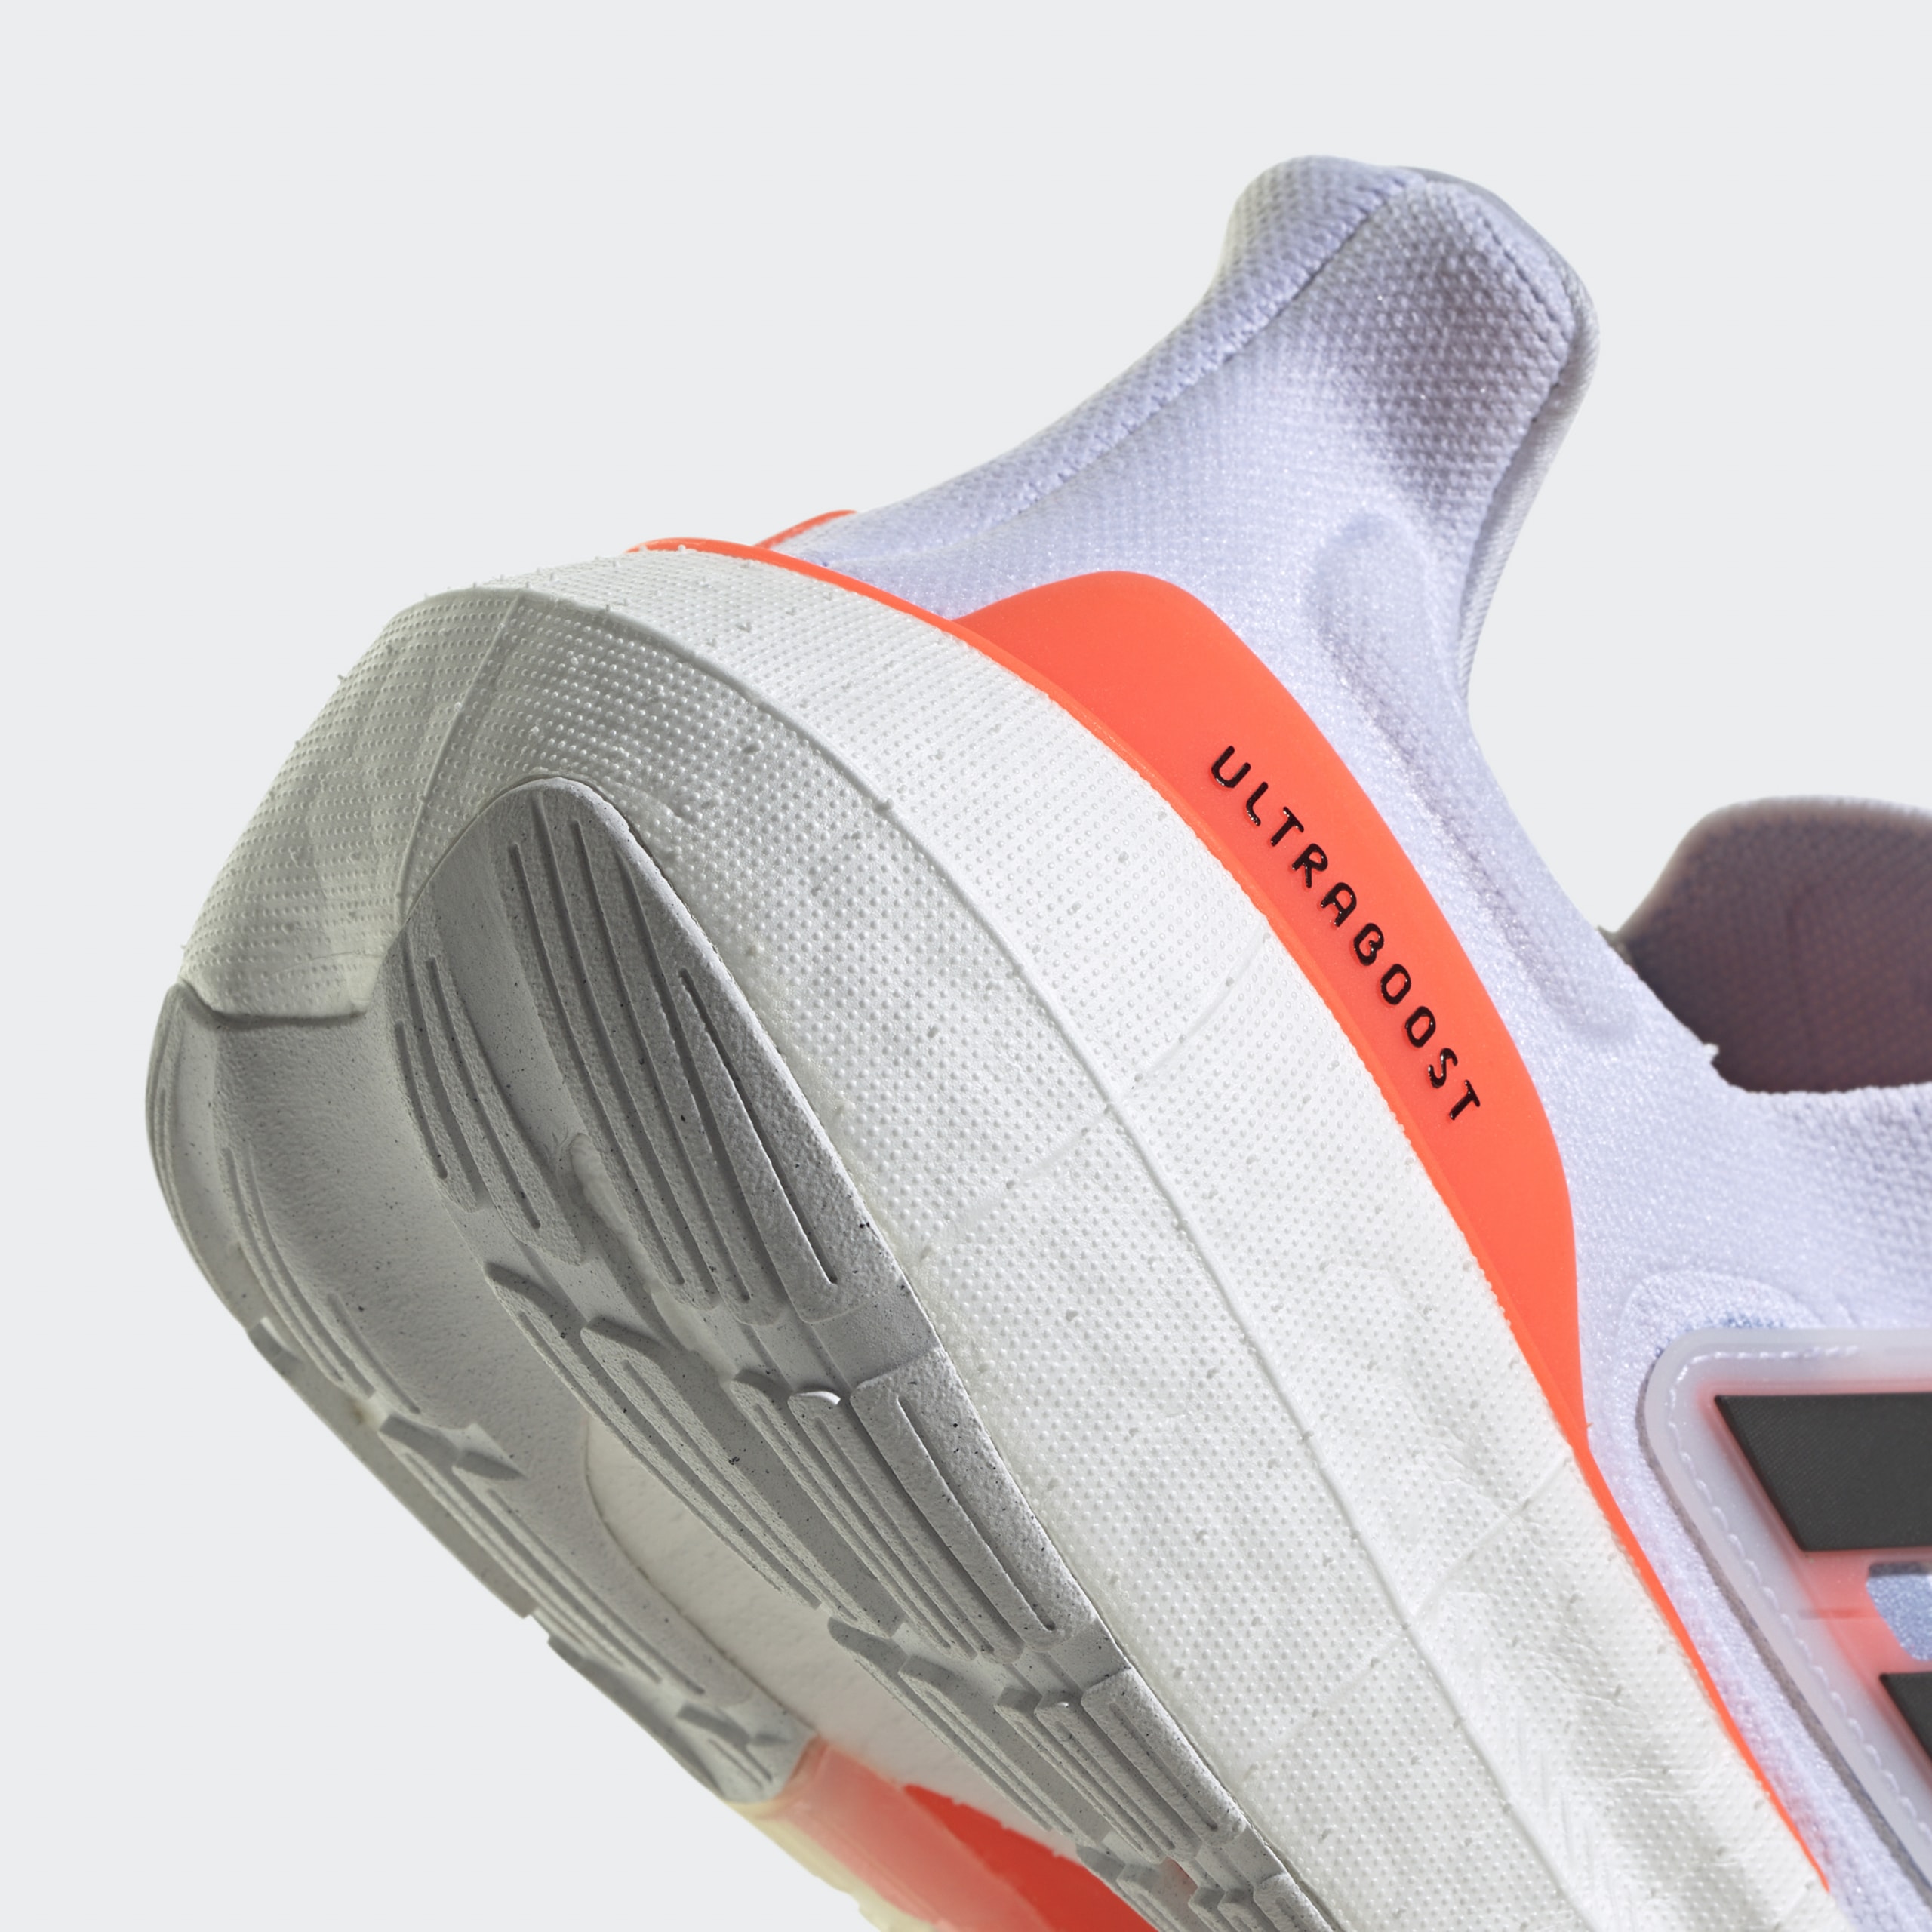 史上最輕！adidas 全新跑鞋 UltraBOOST Light 正式登場